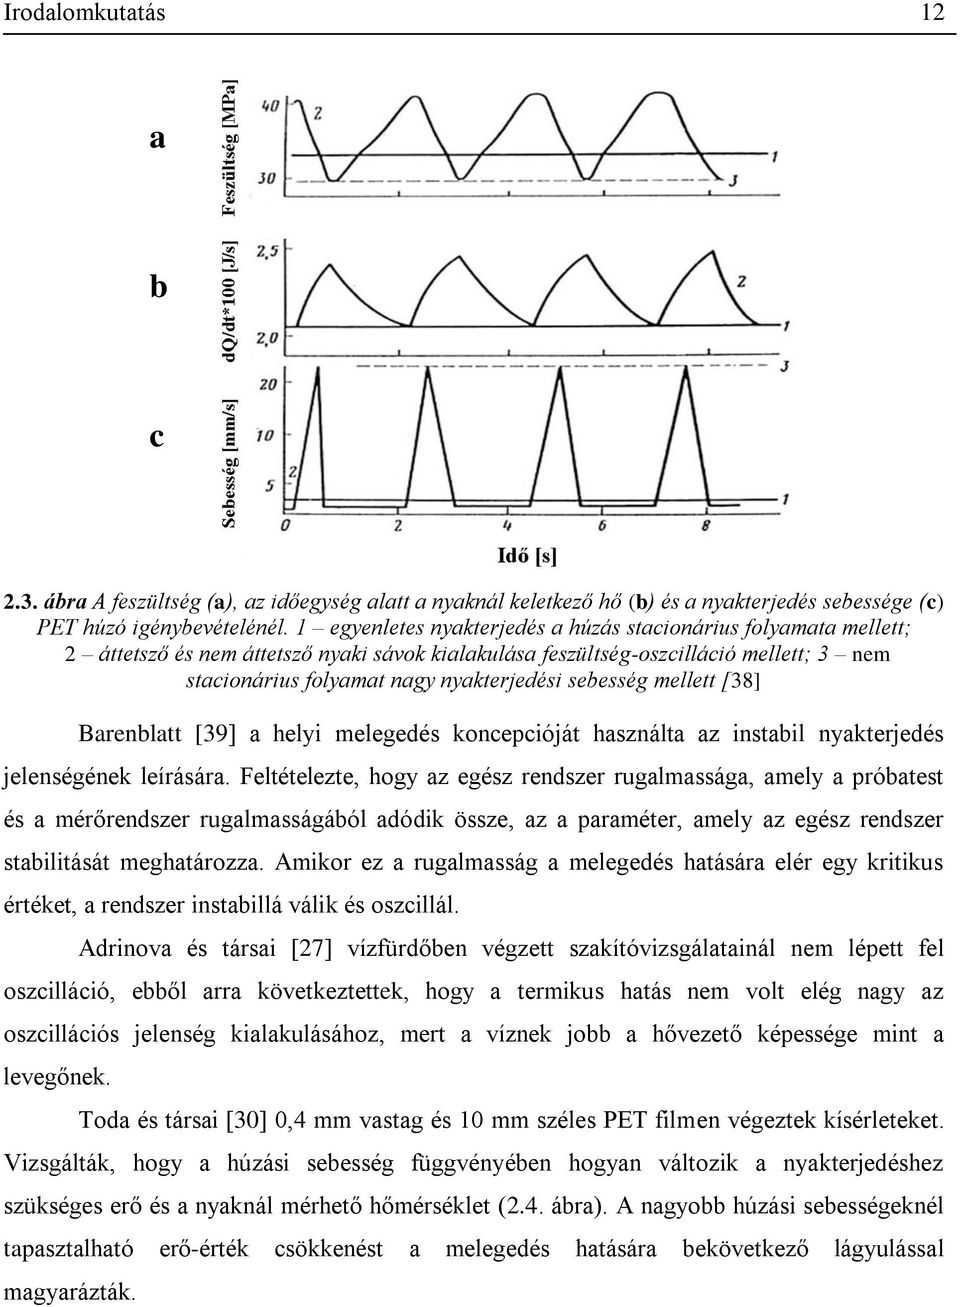 sebesség mellett [38] Barenblatt [39] a helyi melegedés koncepcióját használta az instabil nyakterjedés jelenségének leírására.